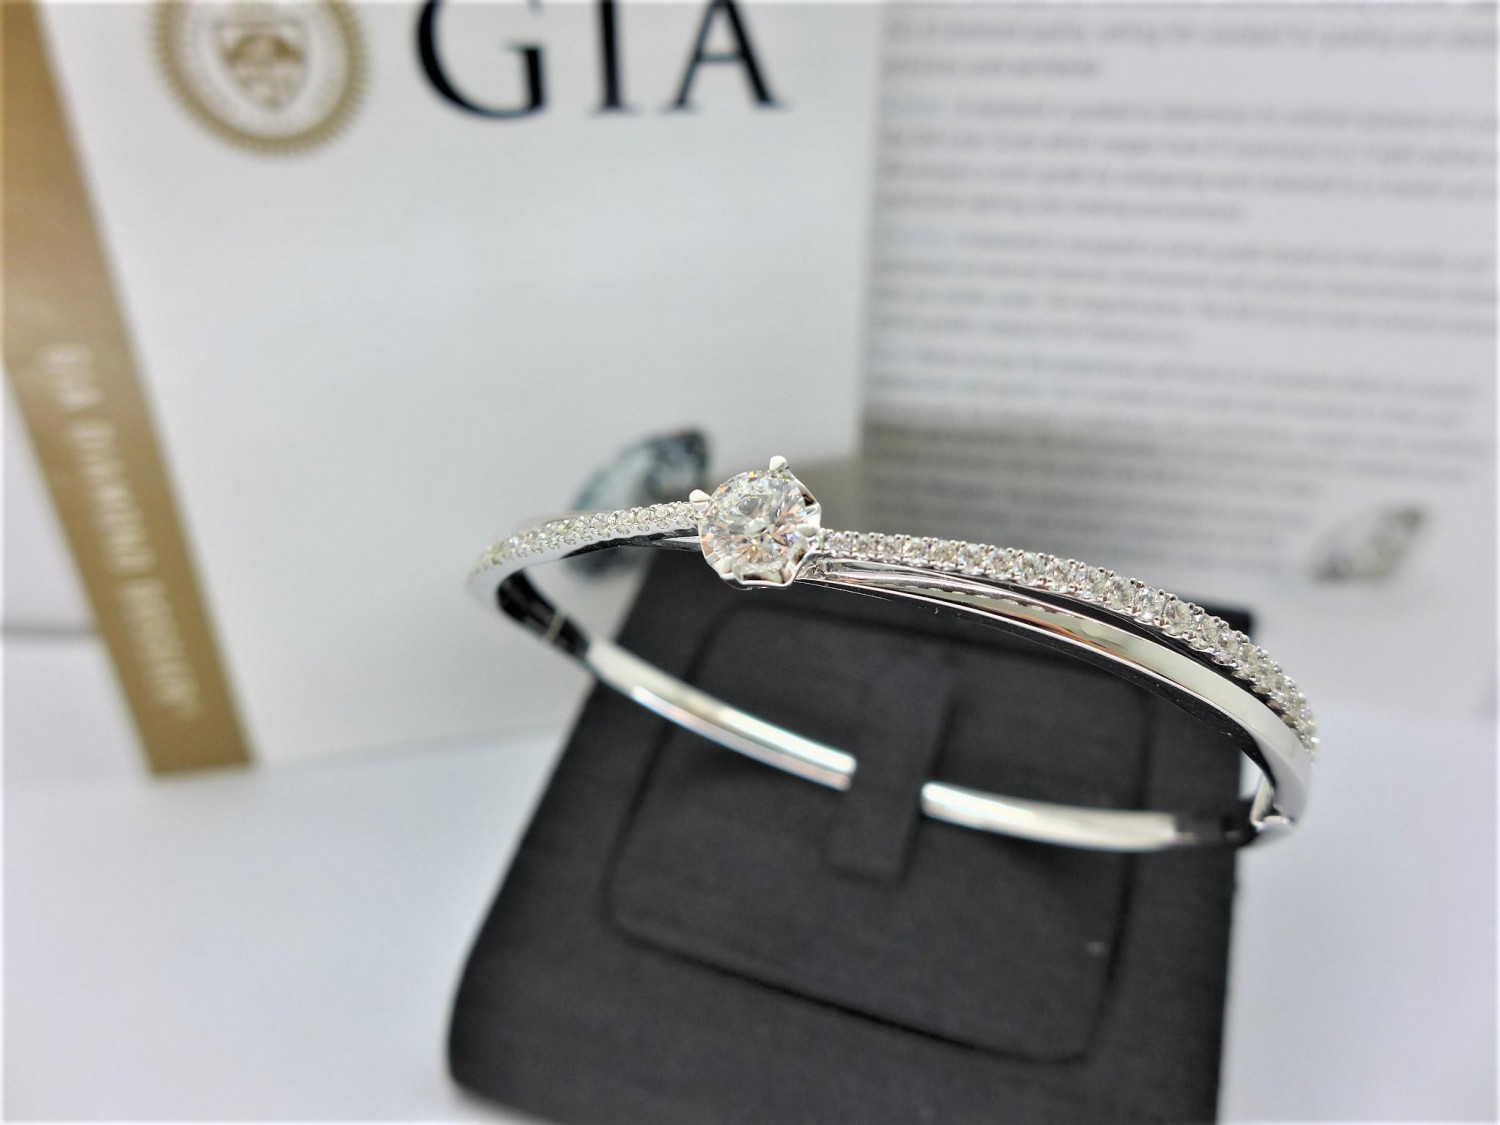 GIA天然鑽石手環 0.52ct  F/VS2/3EX H&A 18K 配鑽46p共0.67 ct 手工訂製款n0645